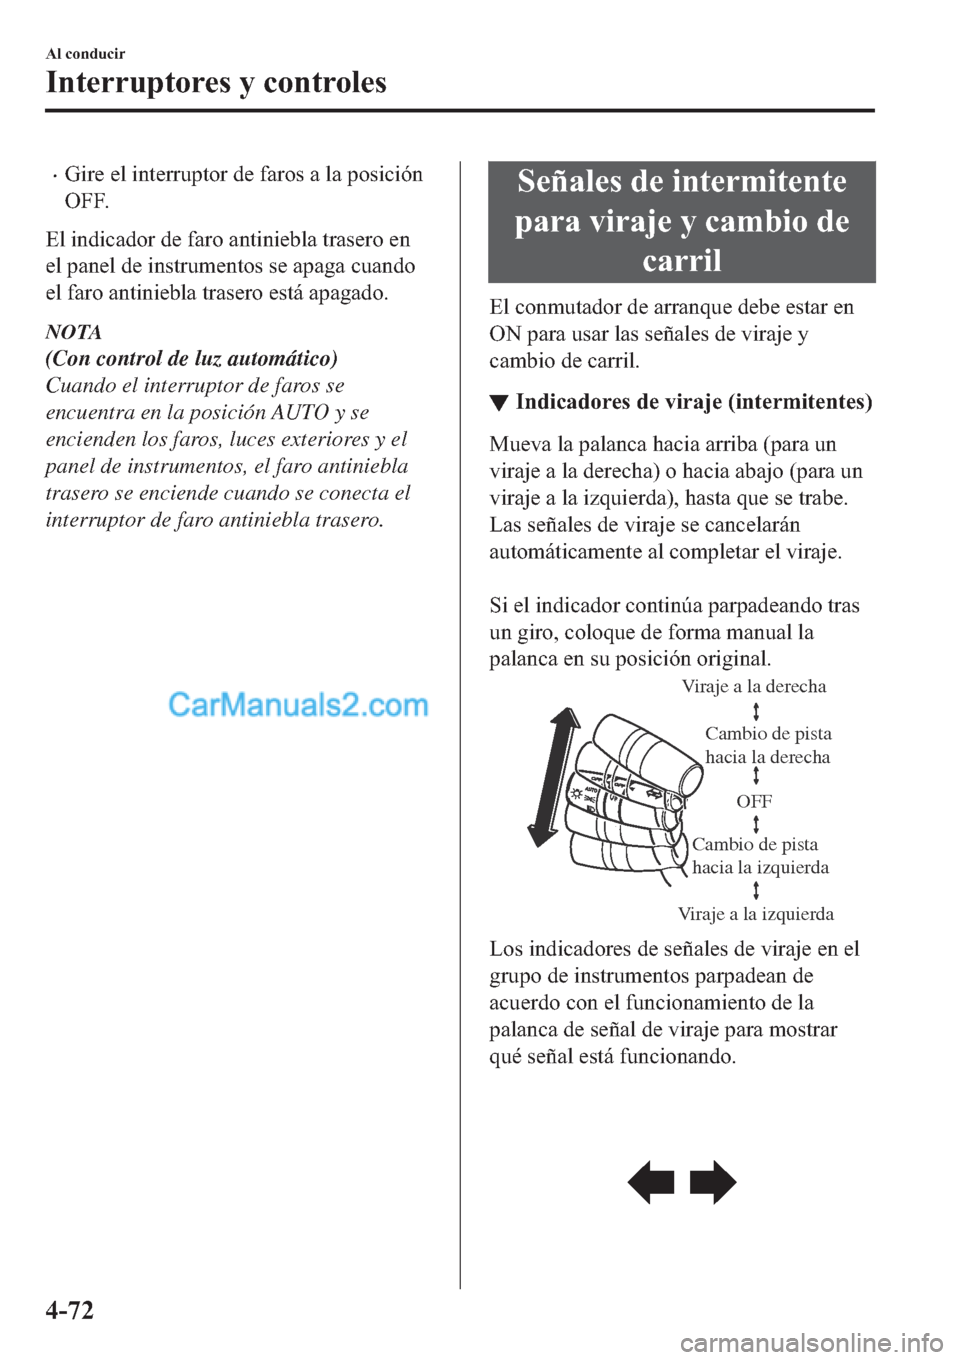 MAZDA MODEL 2 2019  Manual del propietario (in Spanish) �x�*�L�U�H��H�O��L�Q�W�H�U�U�X�S�W�R�U��G�H��I�D�U�R�V��D��O�D��S�R�V�L�F�L�y�Q
�2�)�)�
�(�O��L�Q�G�L�F�D�G�R�U��G�H��I�D�U�R��D�Q�W�L�Q�L�H�E�O�D��W�U�D�V�H�U�R��H�Q
�H�O��S�D�Q�H�O��